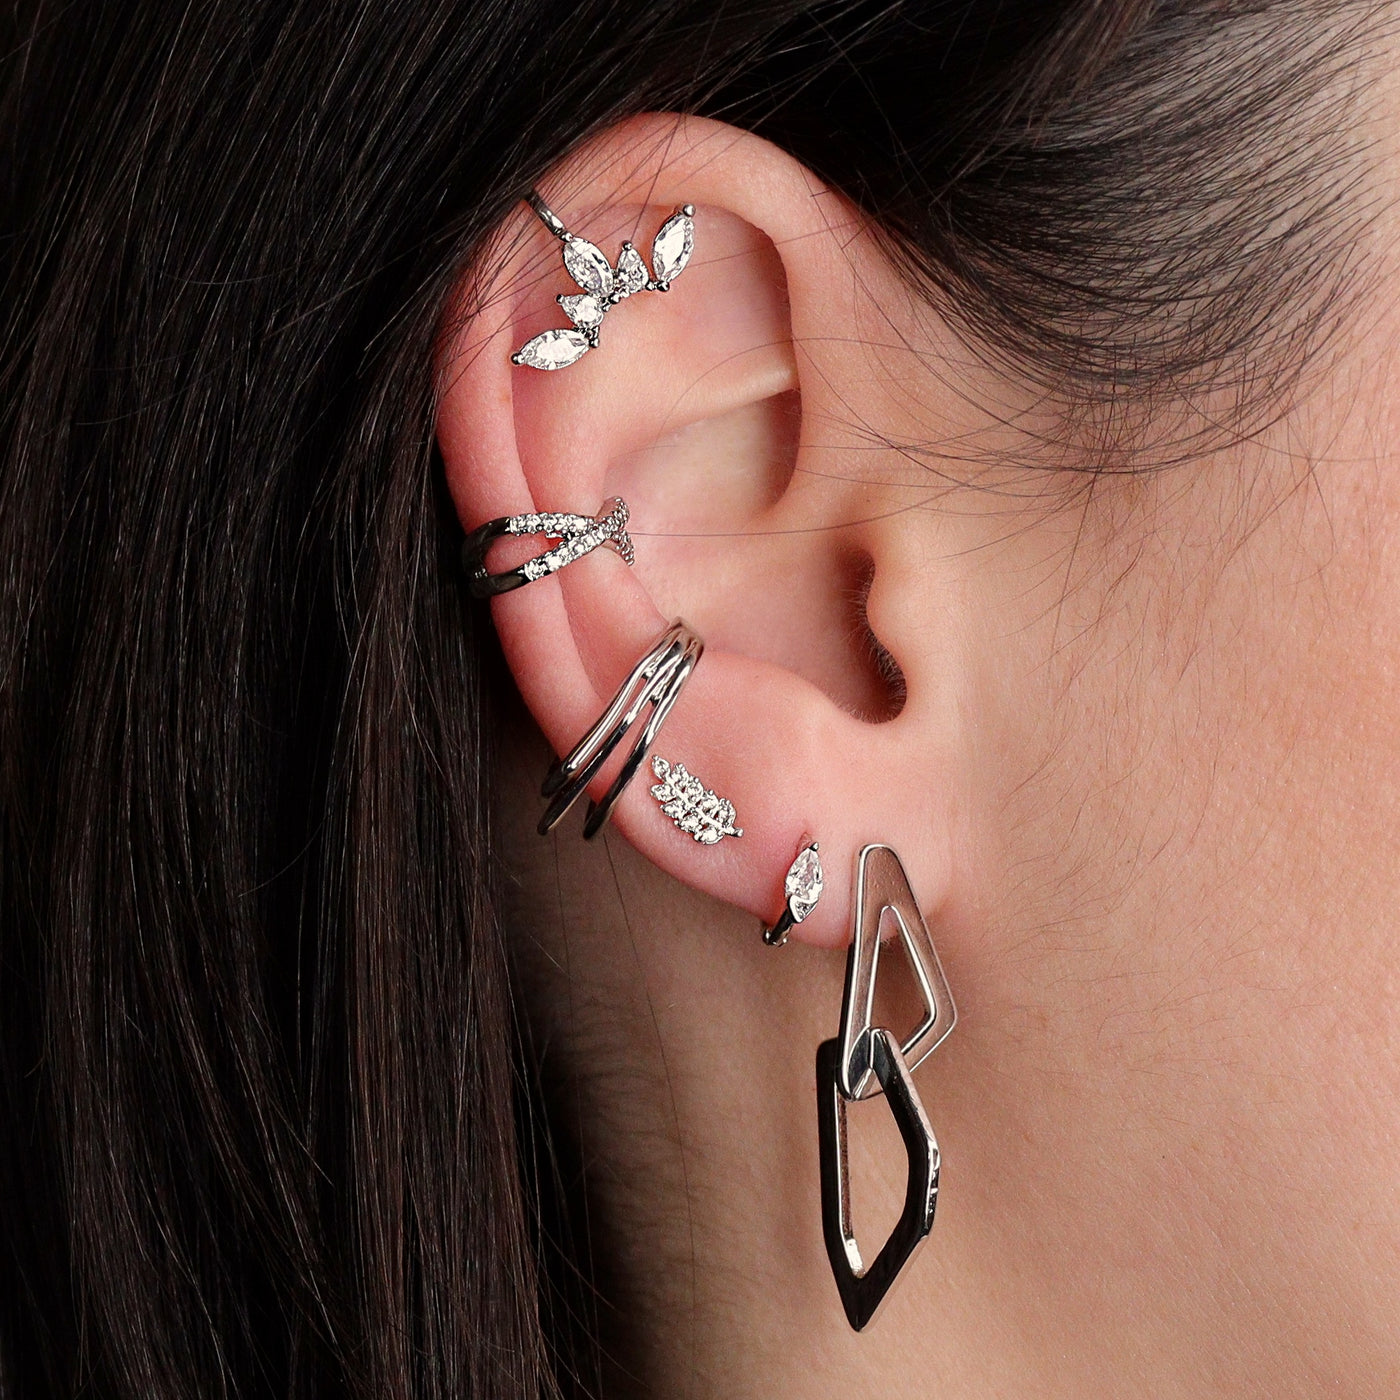 Amy earrings